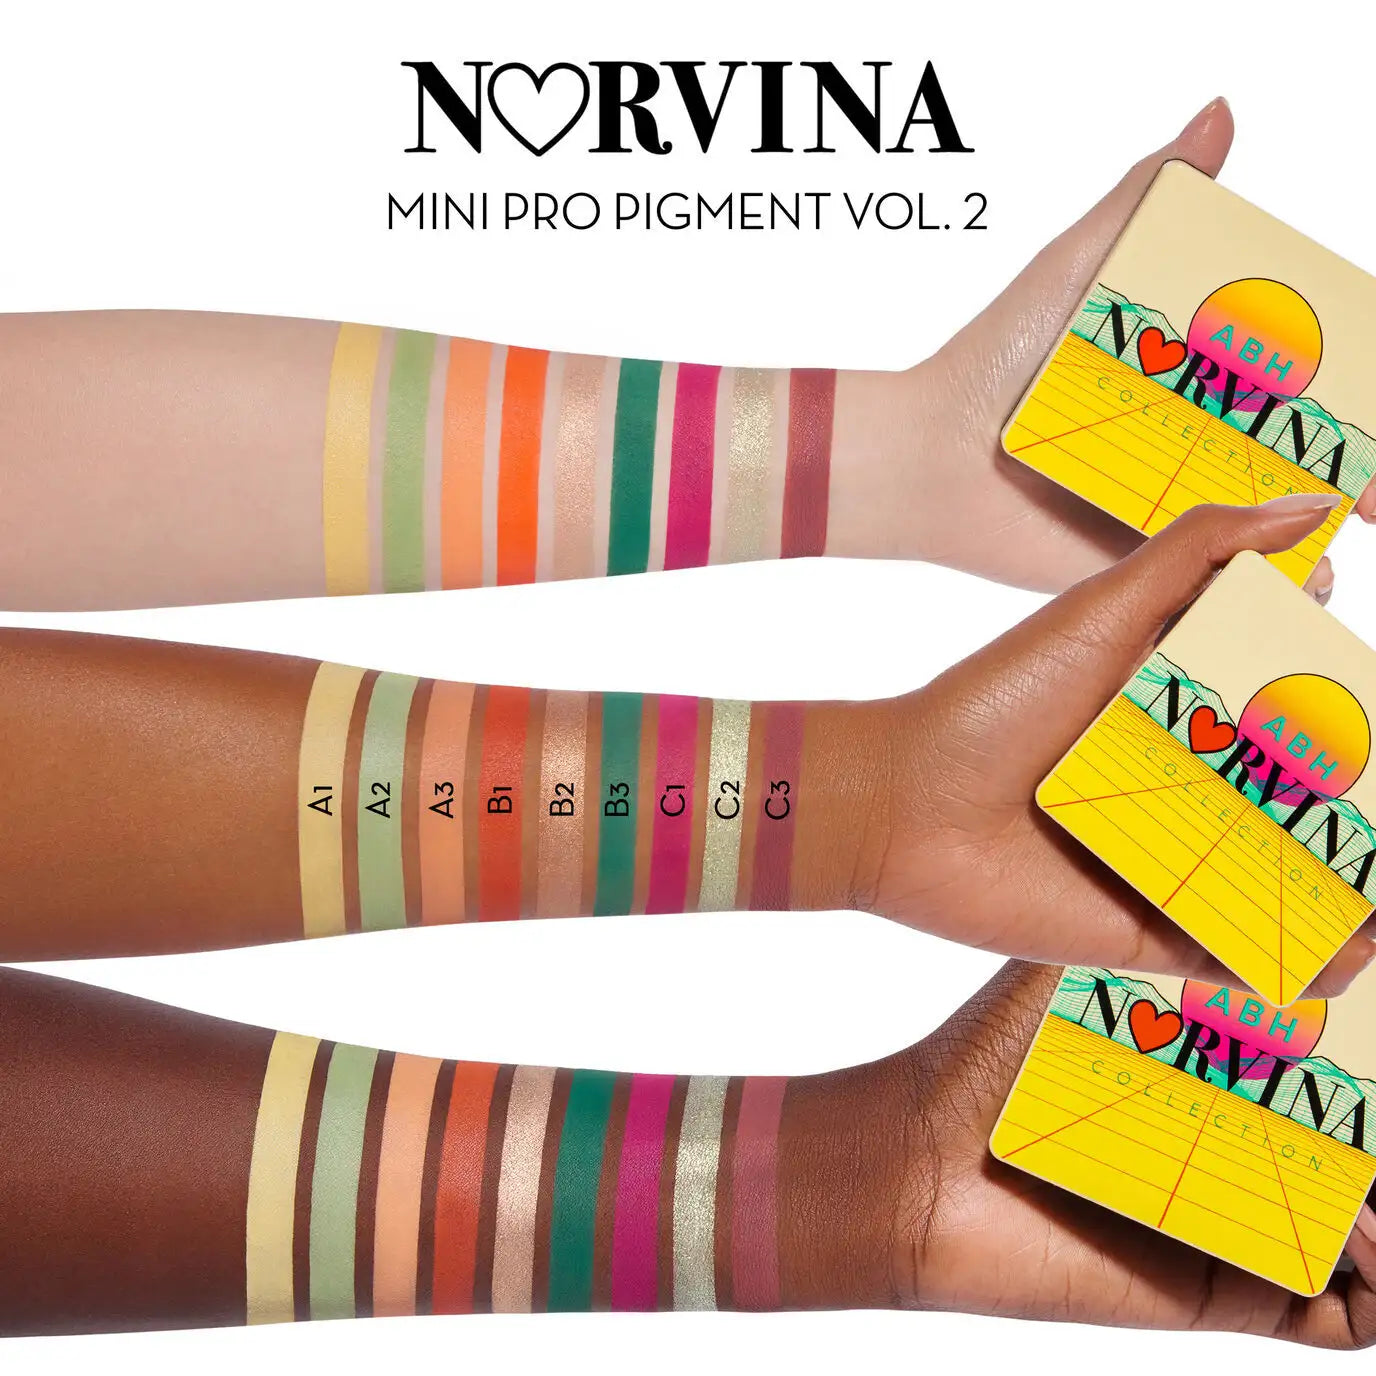 Mini NORVINA® Pro Pigment Palette Vol. 2 Arm Swatches 